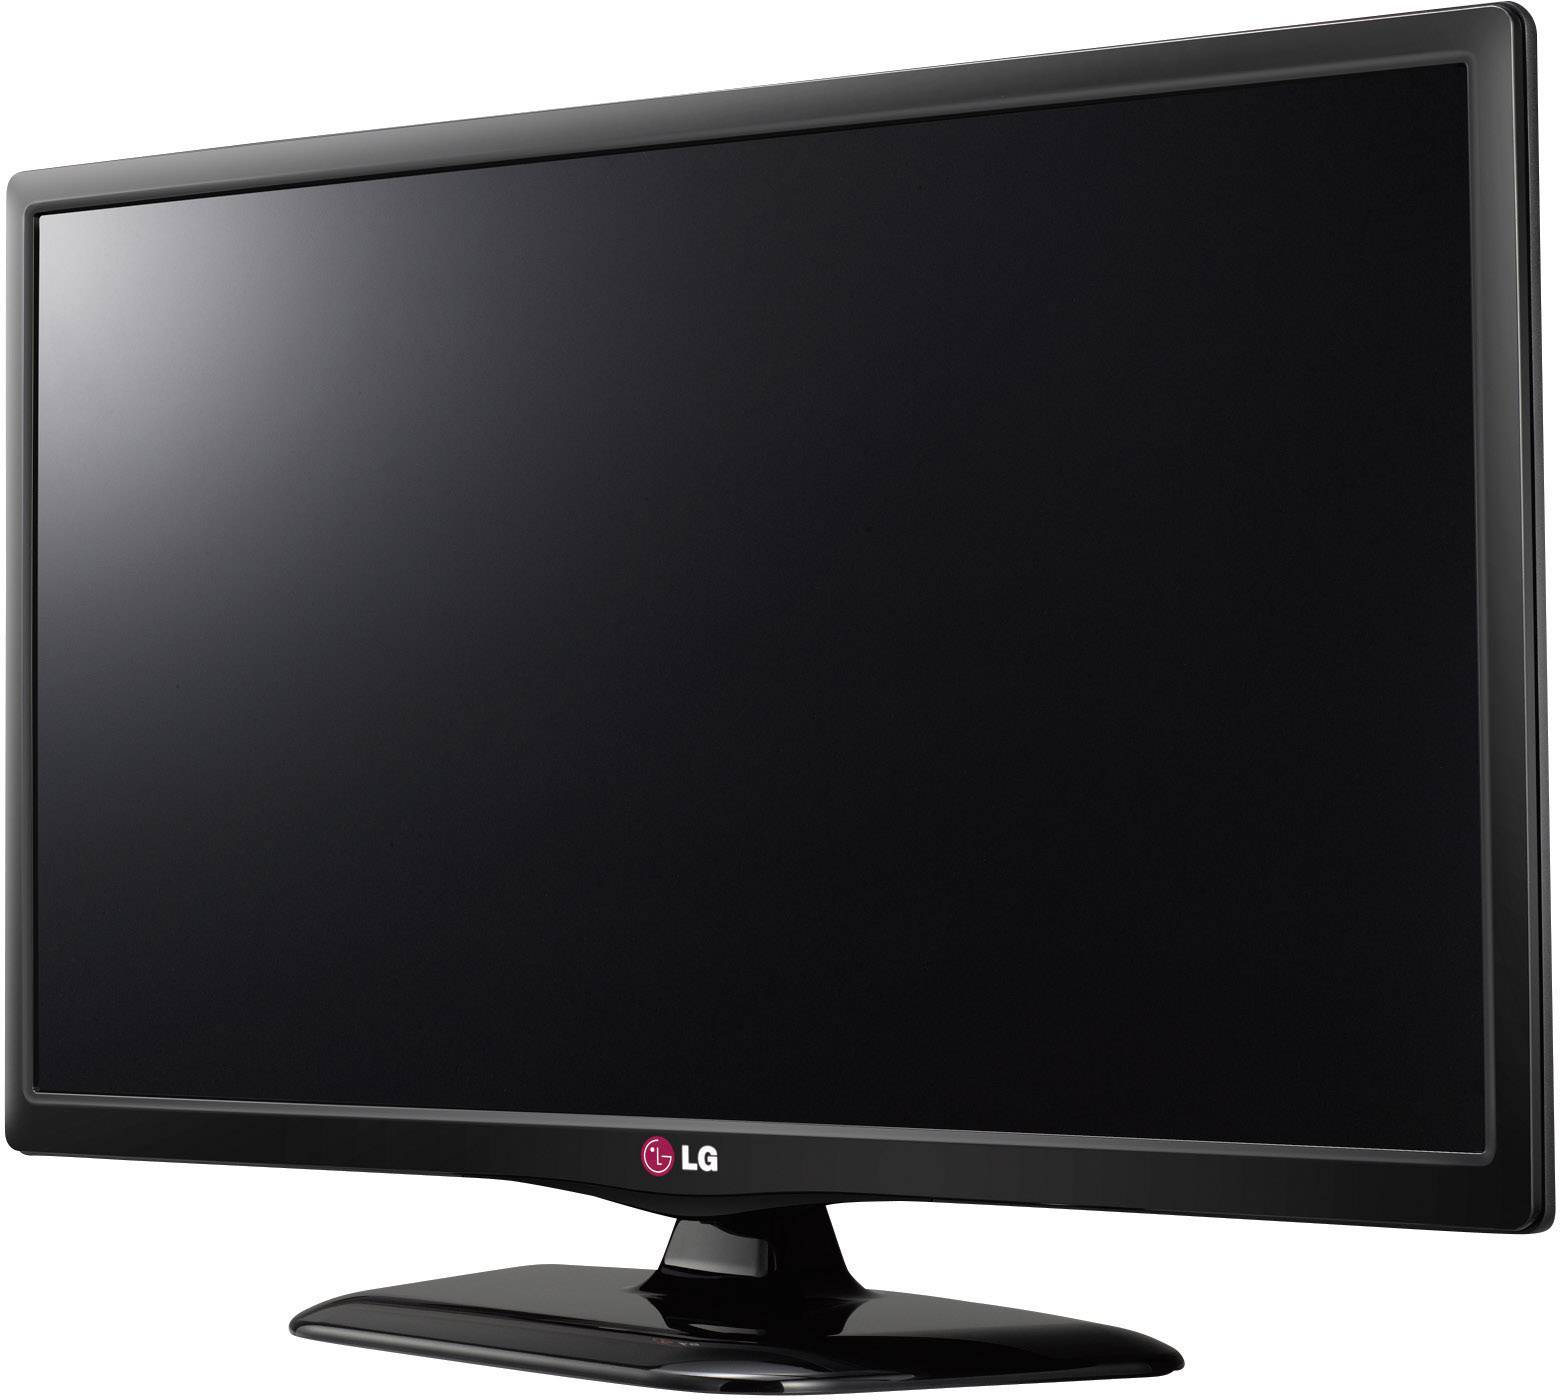 Телевизор lg 2012. LG 28lb450u. Телевизор LG 28lb450u. Телевизор LG 28lb450u 28". Телевизор led 22 LG 22lf450u.